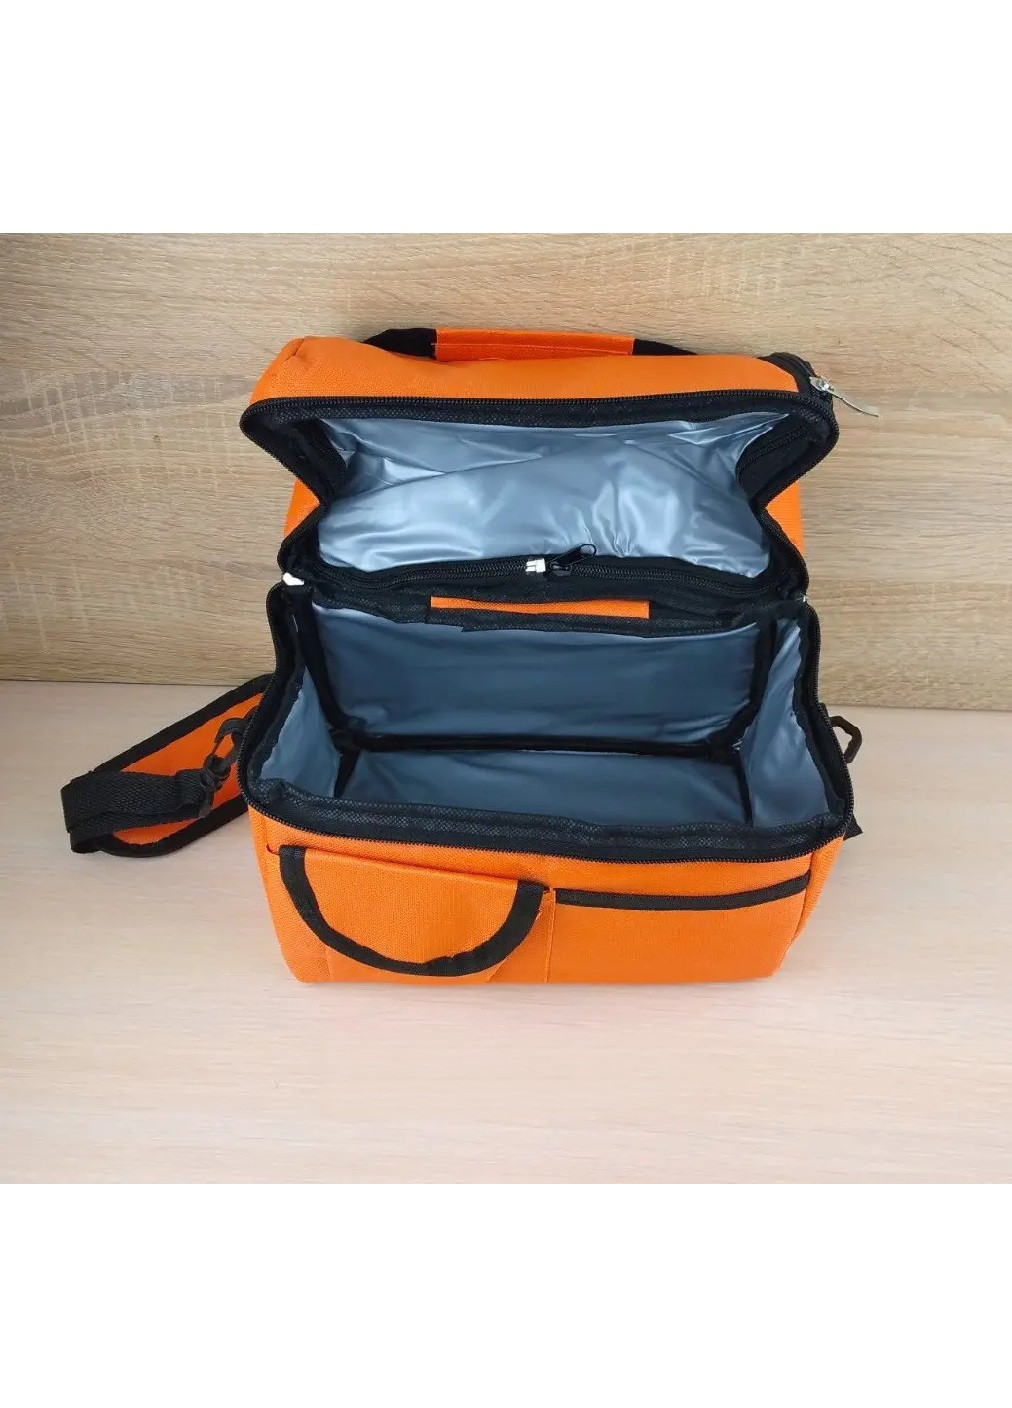 Термосумка термоизоляционная сумка компактная вместительная на молнии два термоотдела 25х24х16 см (475105-Prob) Оранжевая Unbranded (262083045)